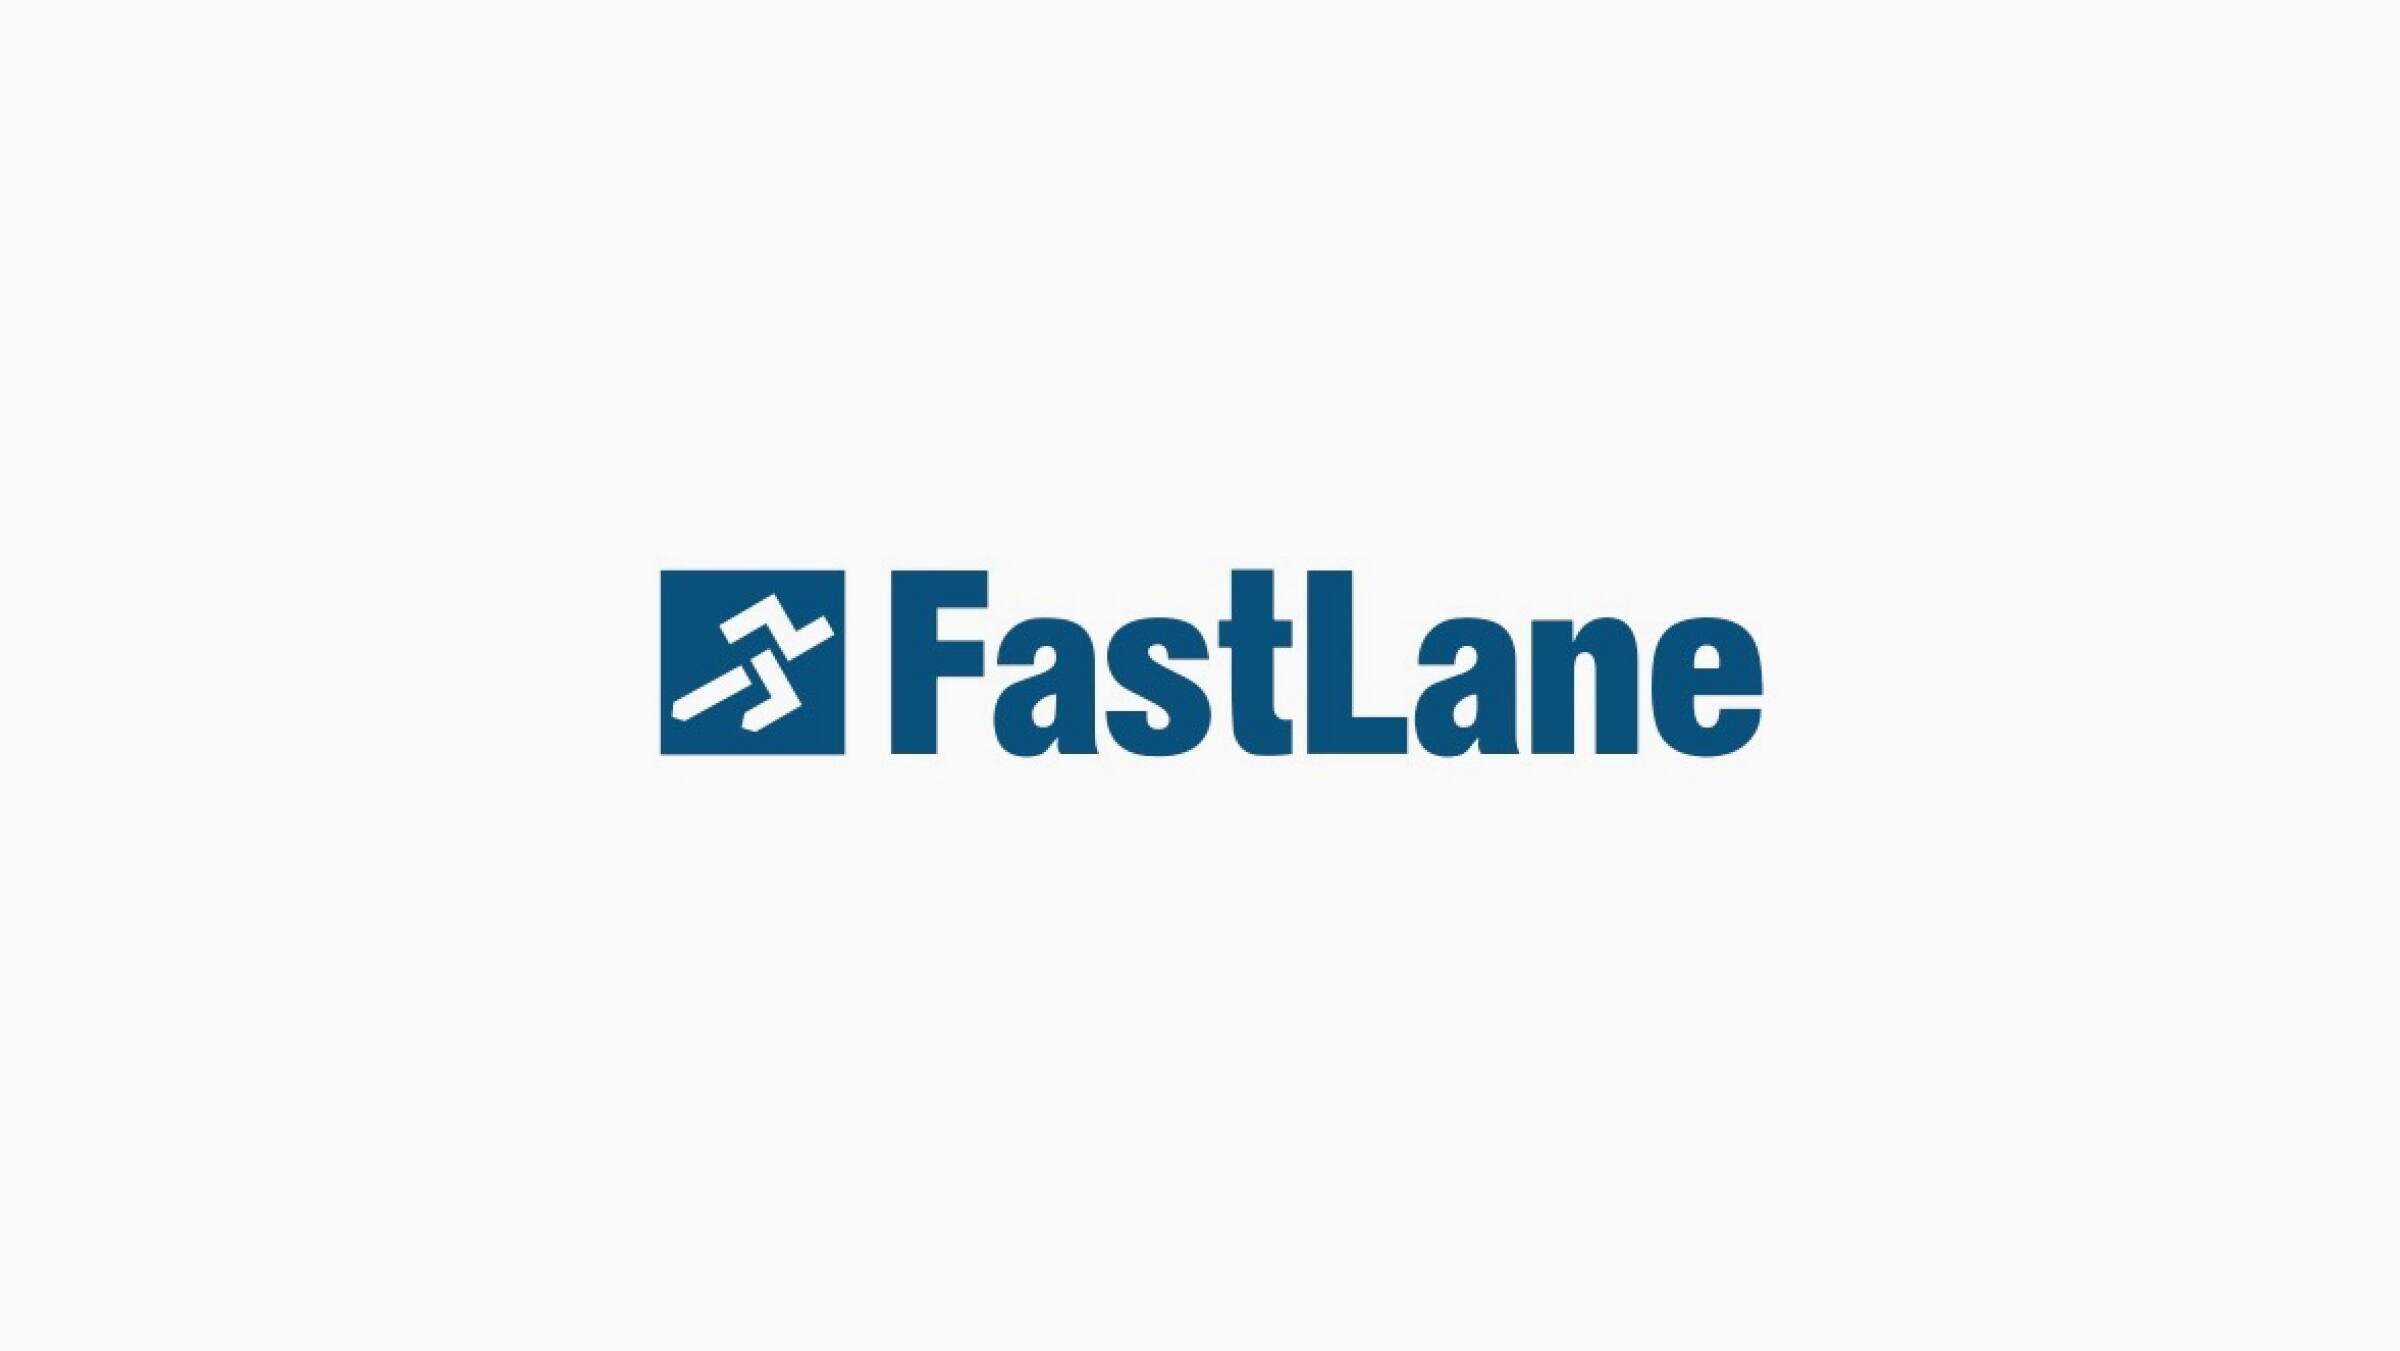 The Fastlane logo